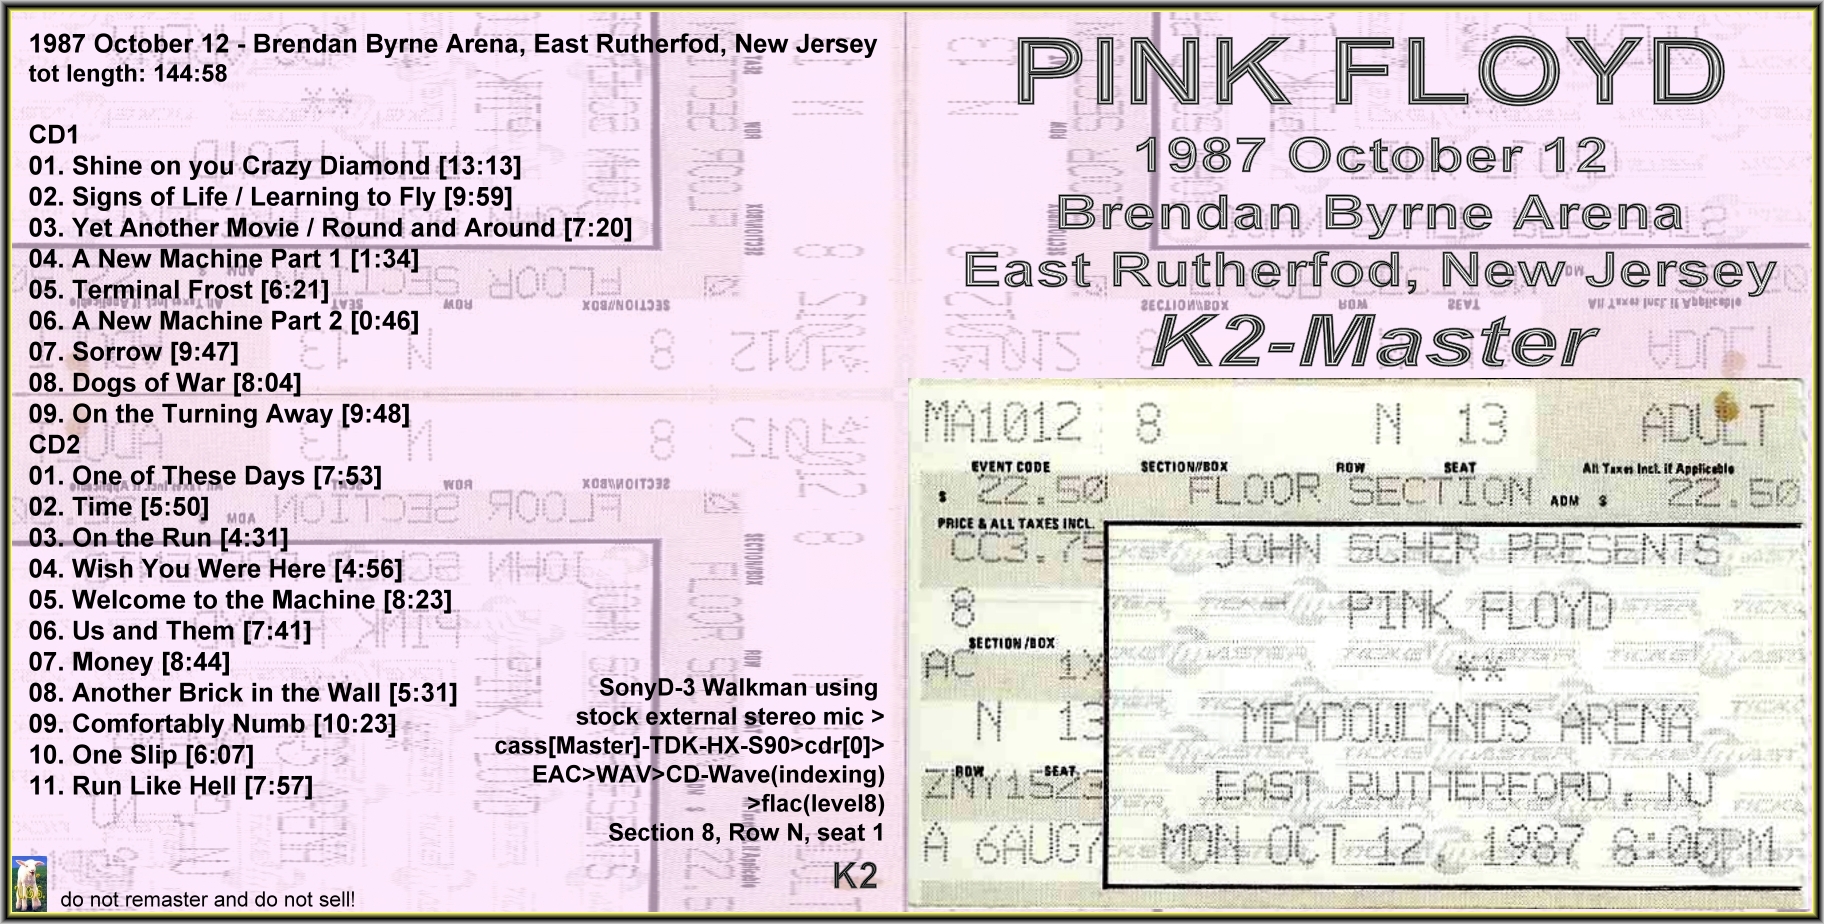 PinkFloyd1987-10-12BrendanByrneArenaEastRutherfordNJ (2).JPG